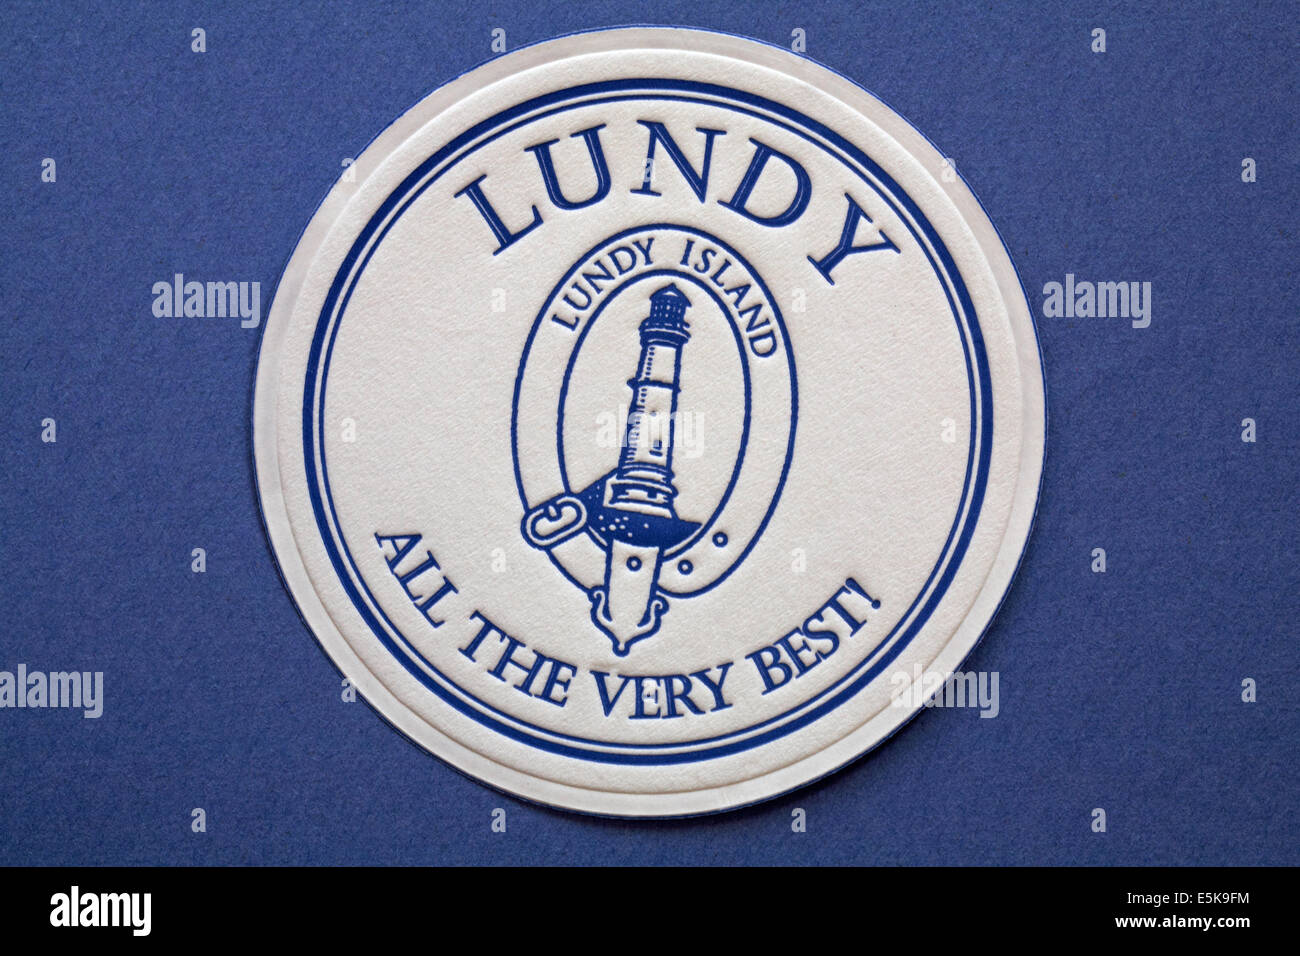 Lundy Island alle das Beste Papier beermat Coaster auf blauem Hintergrund isoliert Stockfoto